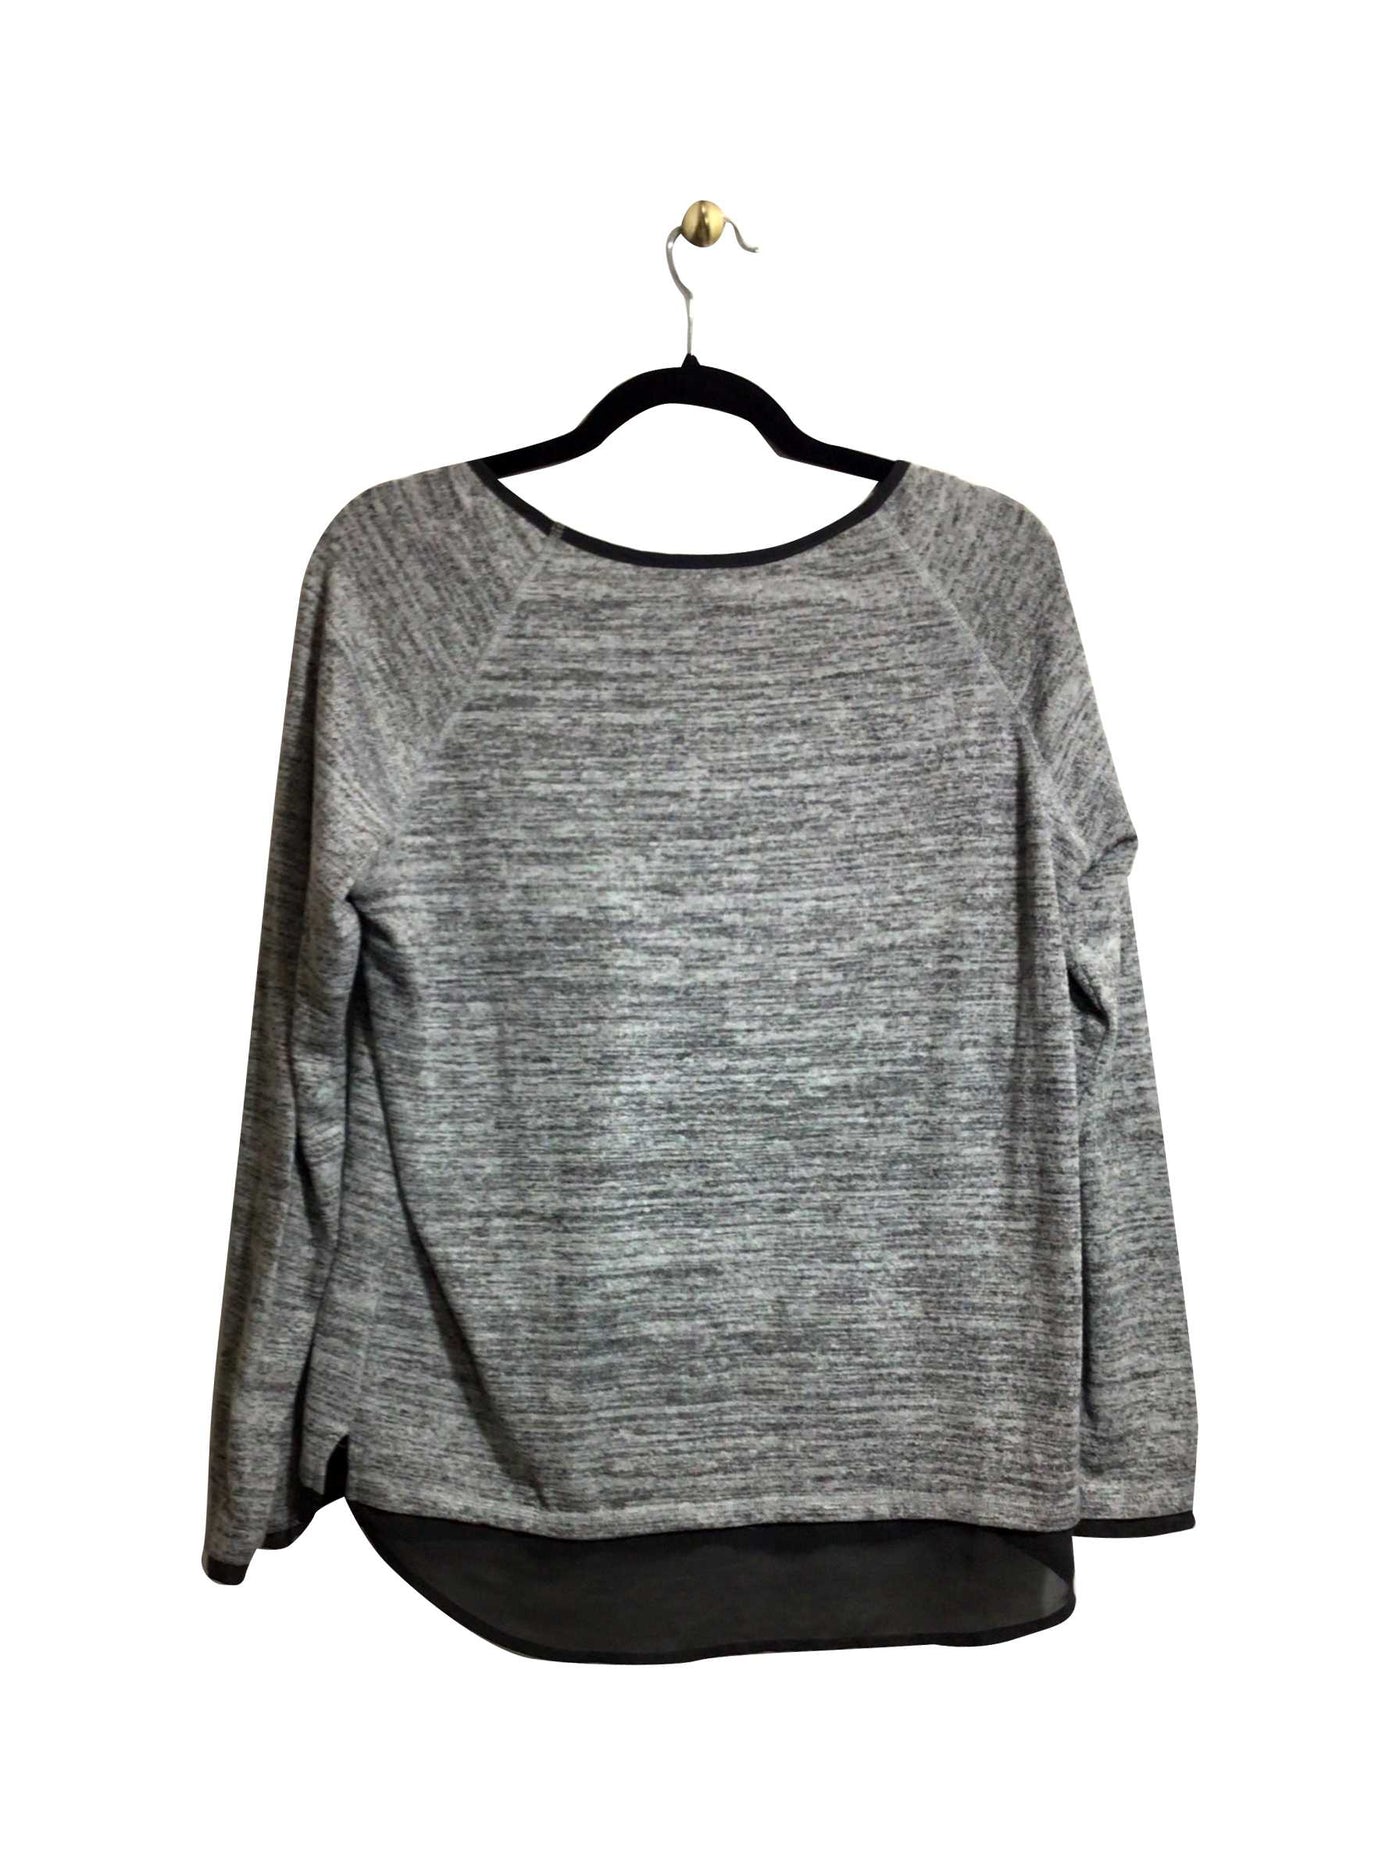 DENVER HAYES Regular fit T-shirt in Gray - Size L | 11.99 $ KOOP